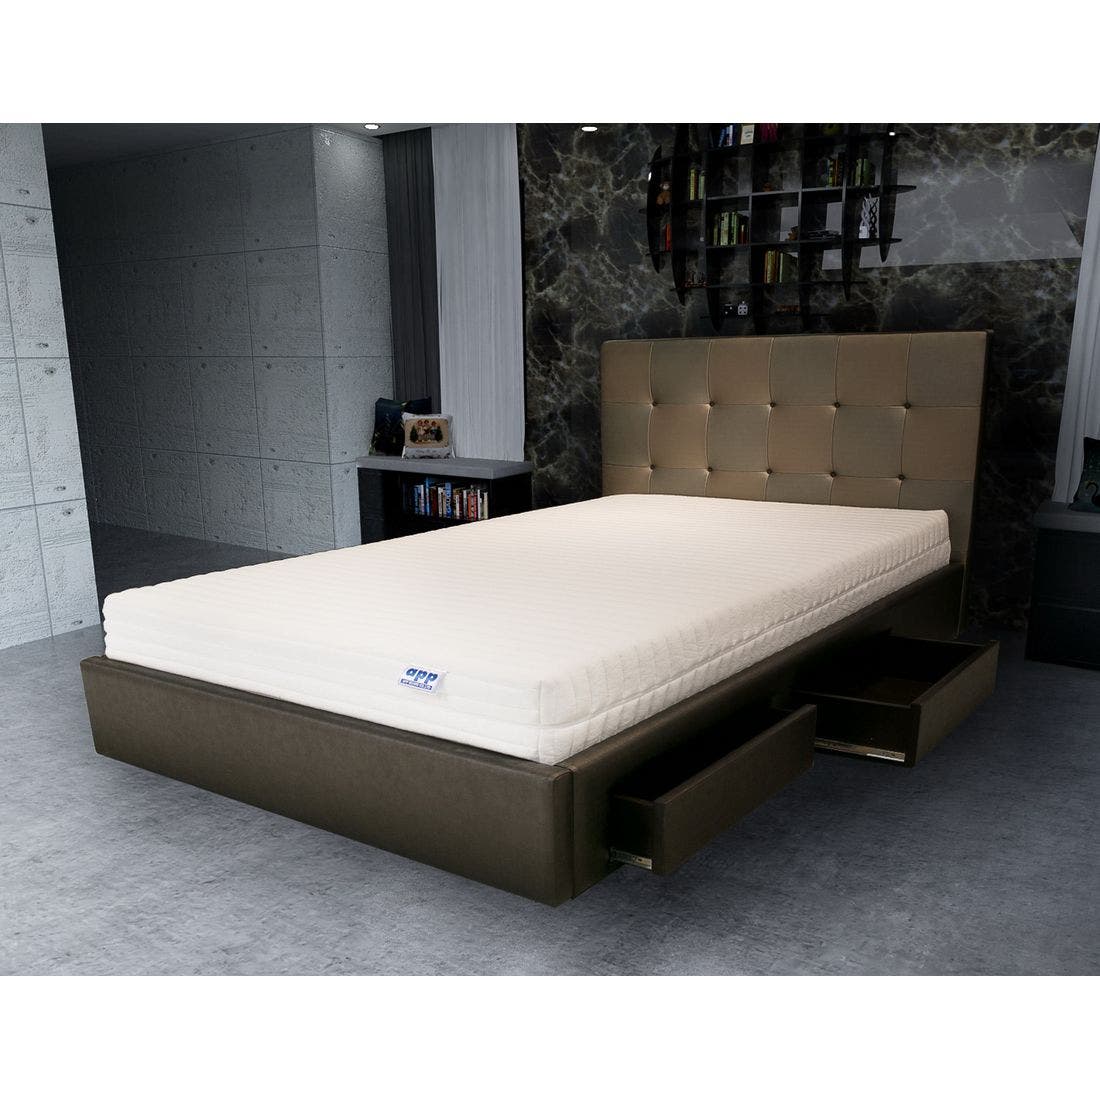 39001672-mattress-bedding-mattresses-latex-mattresses-31